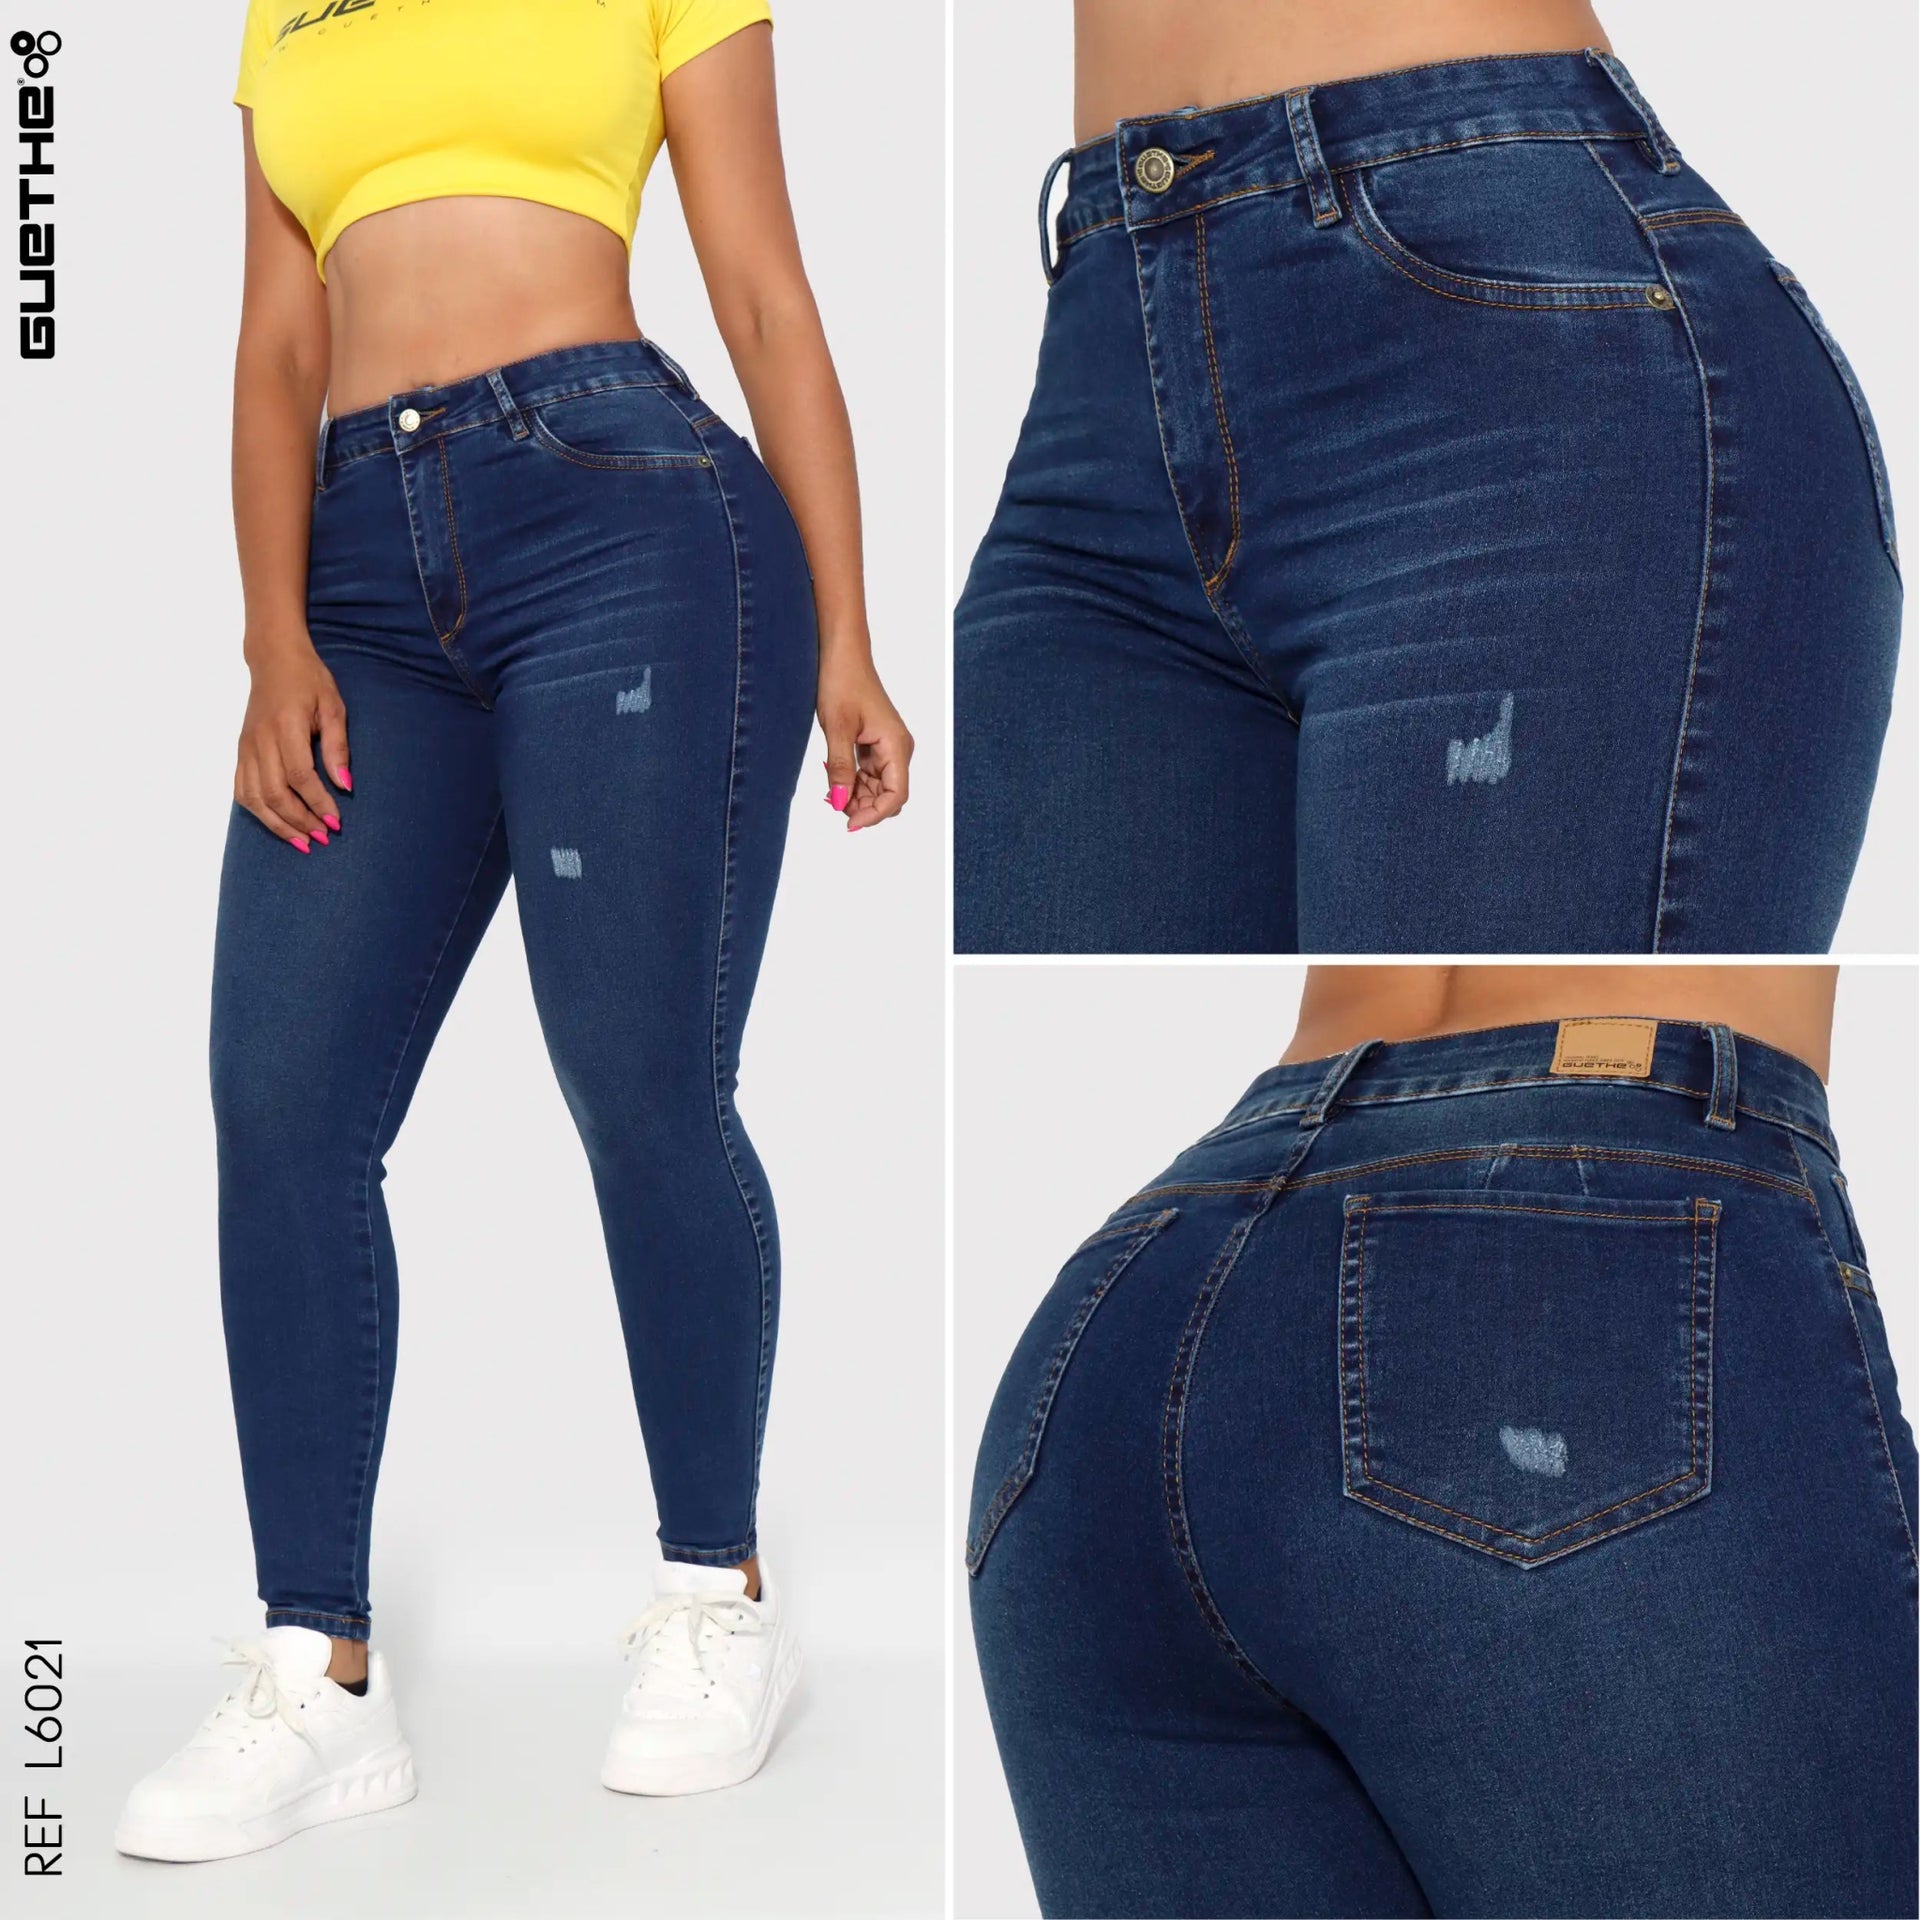 Jeans Con Puño Mujer | Tienda Ganga